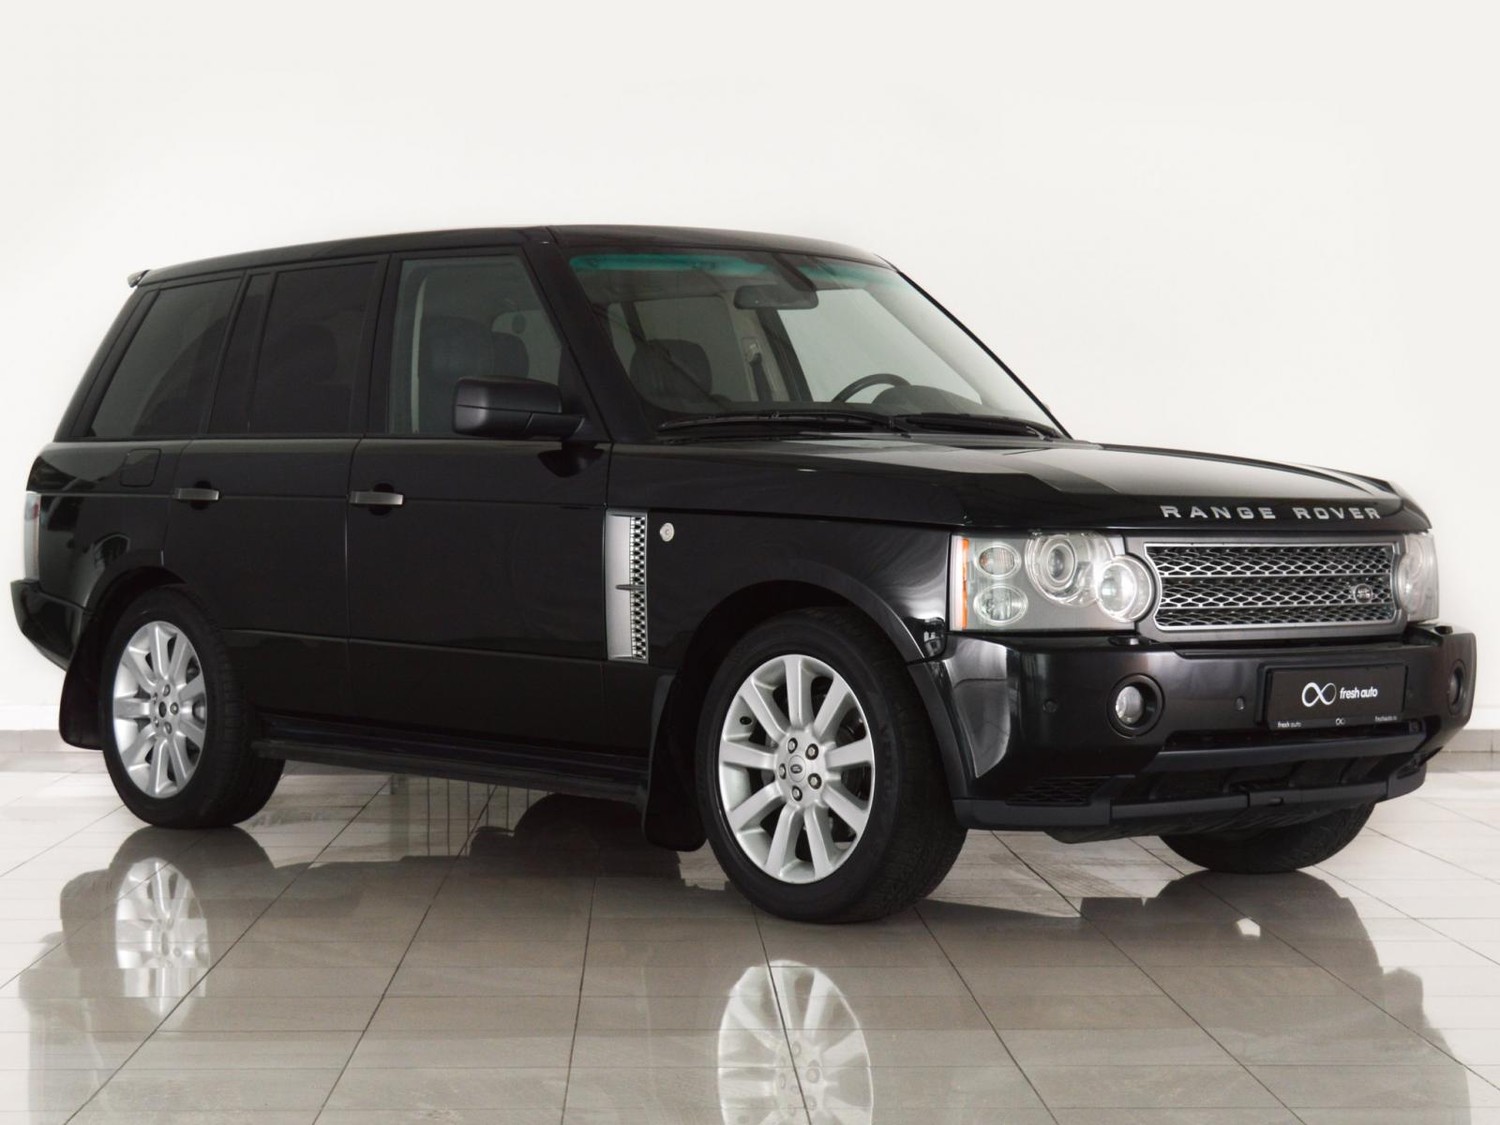 Неизвестный украл Land Rover стоимостью около 4 млн руб. в Граде Московском в ТиНАО